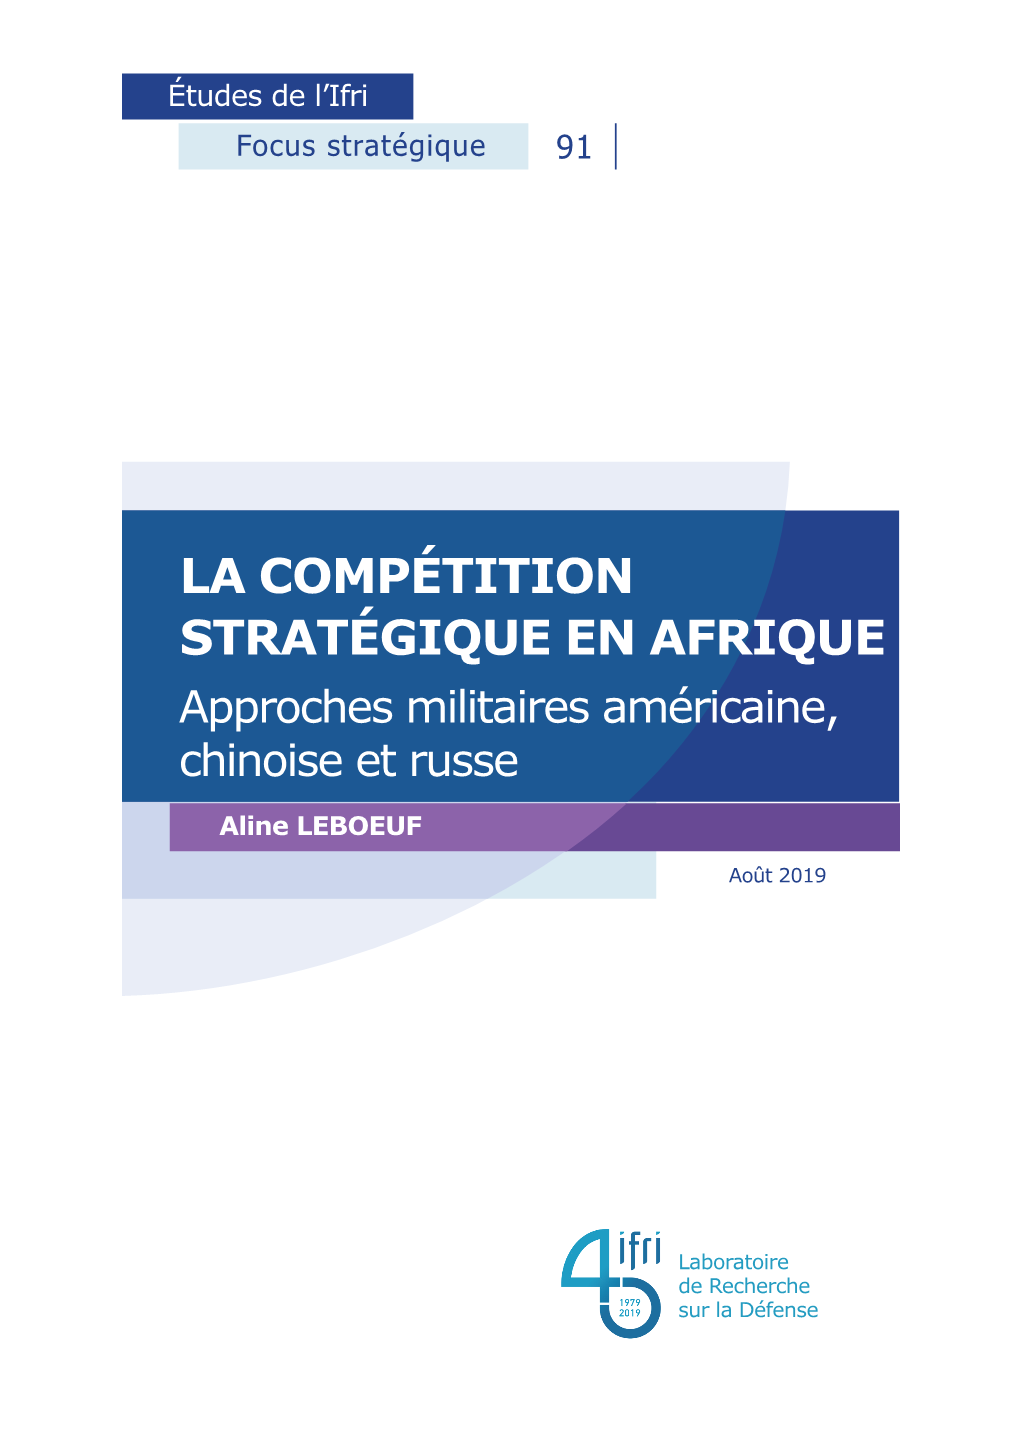 La Compétition Stratégique En Afrique. Approches Militaires Américaine, Chinoise Et Russe », Focus Stratégique, N° 91, Ifri, Août 2019